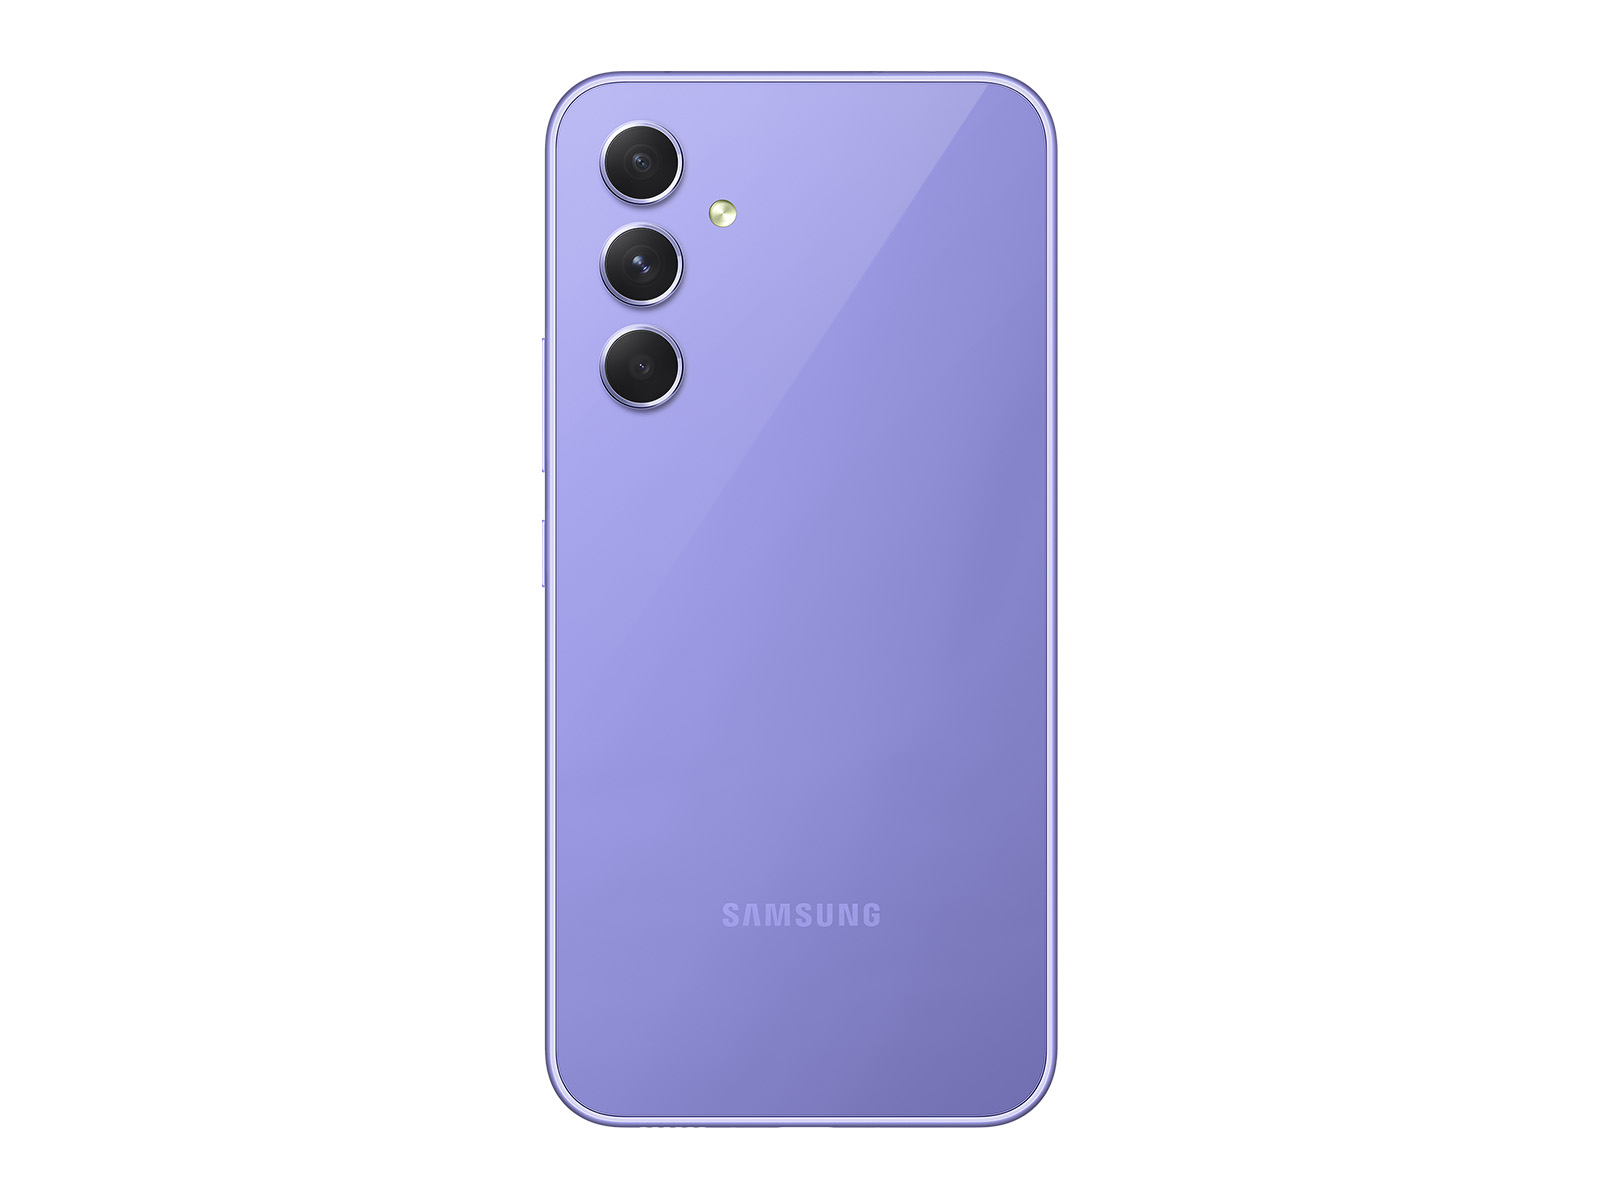 Samsung Galaxy A54 5G DUAL SIM GSM Factory Unlocked 6.4 50MP